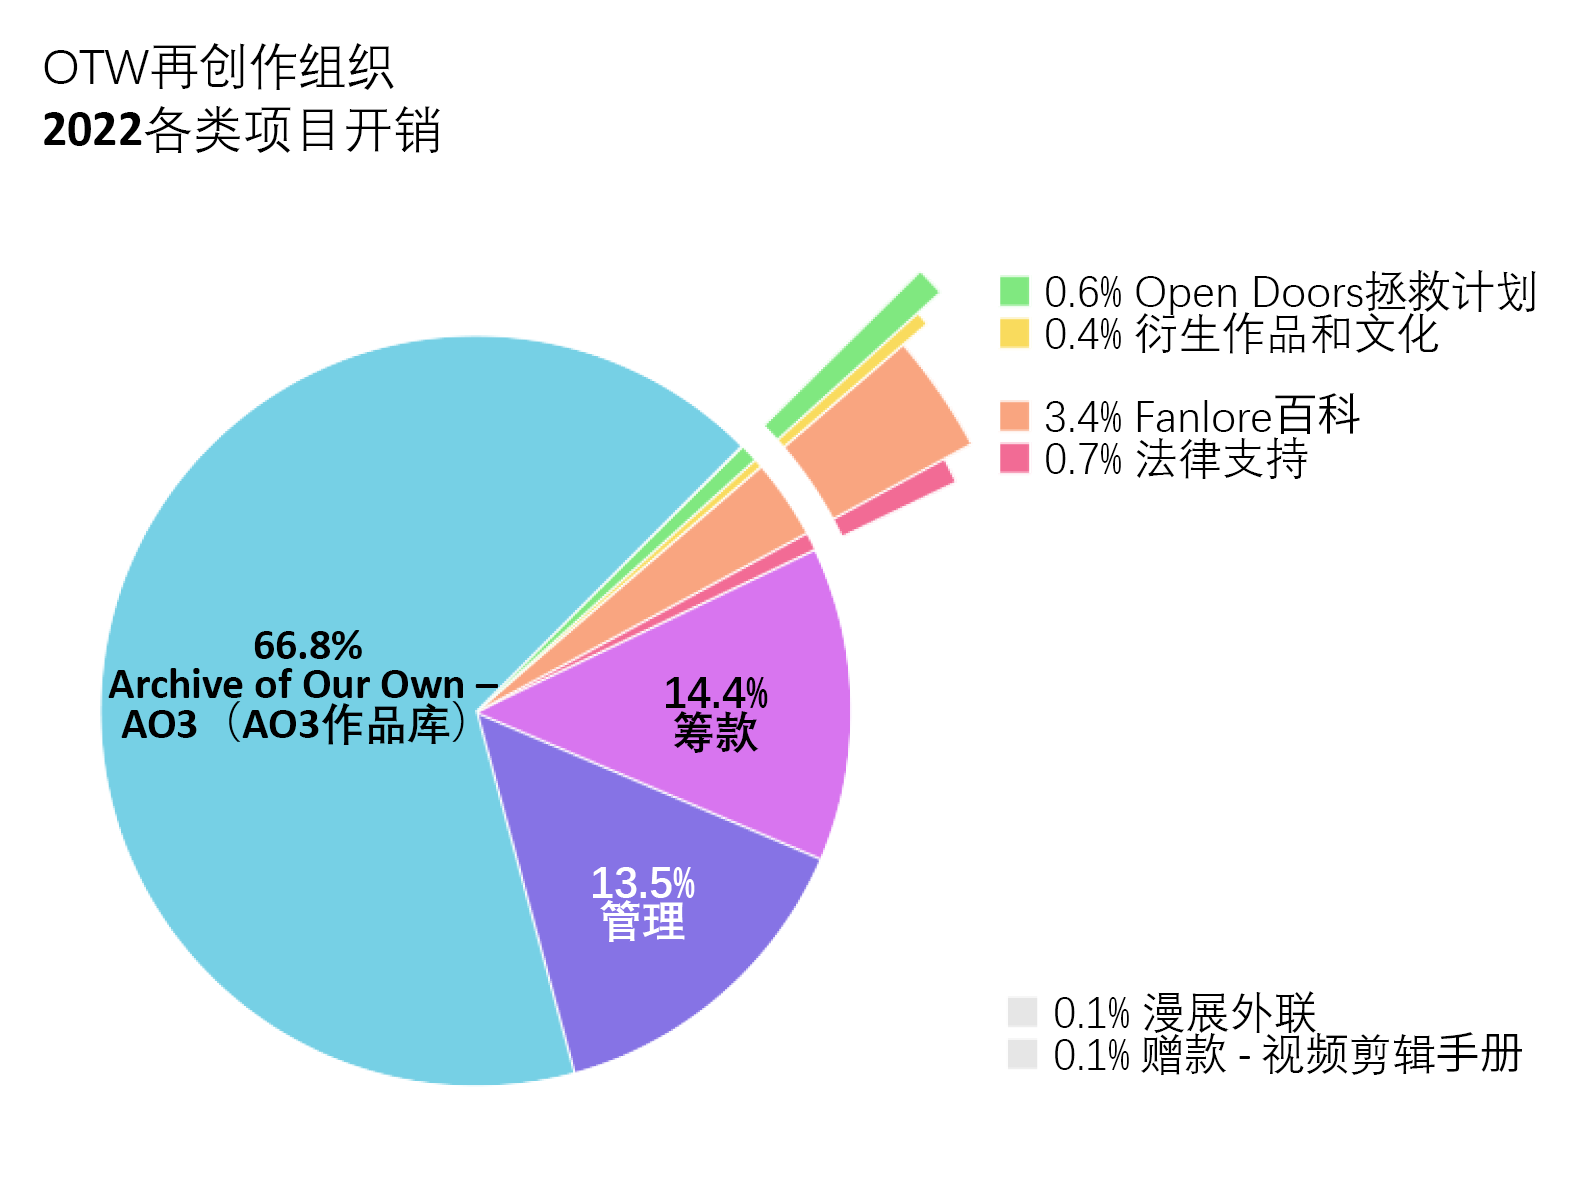 各类项目开销：Archive of Our Own – AO3（AO3作品库）：66.8%。Open Doors拯救计划：0.6%。《衍生作品和文化》：0.4%。Fanlore百科：3.4%。法律支持：0.7%。漫展外联：0.1%。赠款（视频剪辑手册）：0.1%。管理：13.5%。筹款：14.4%。